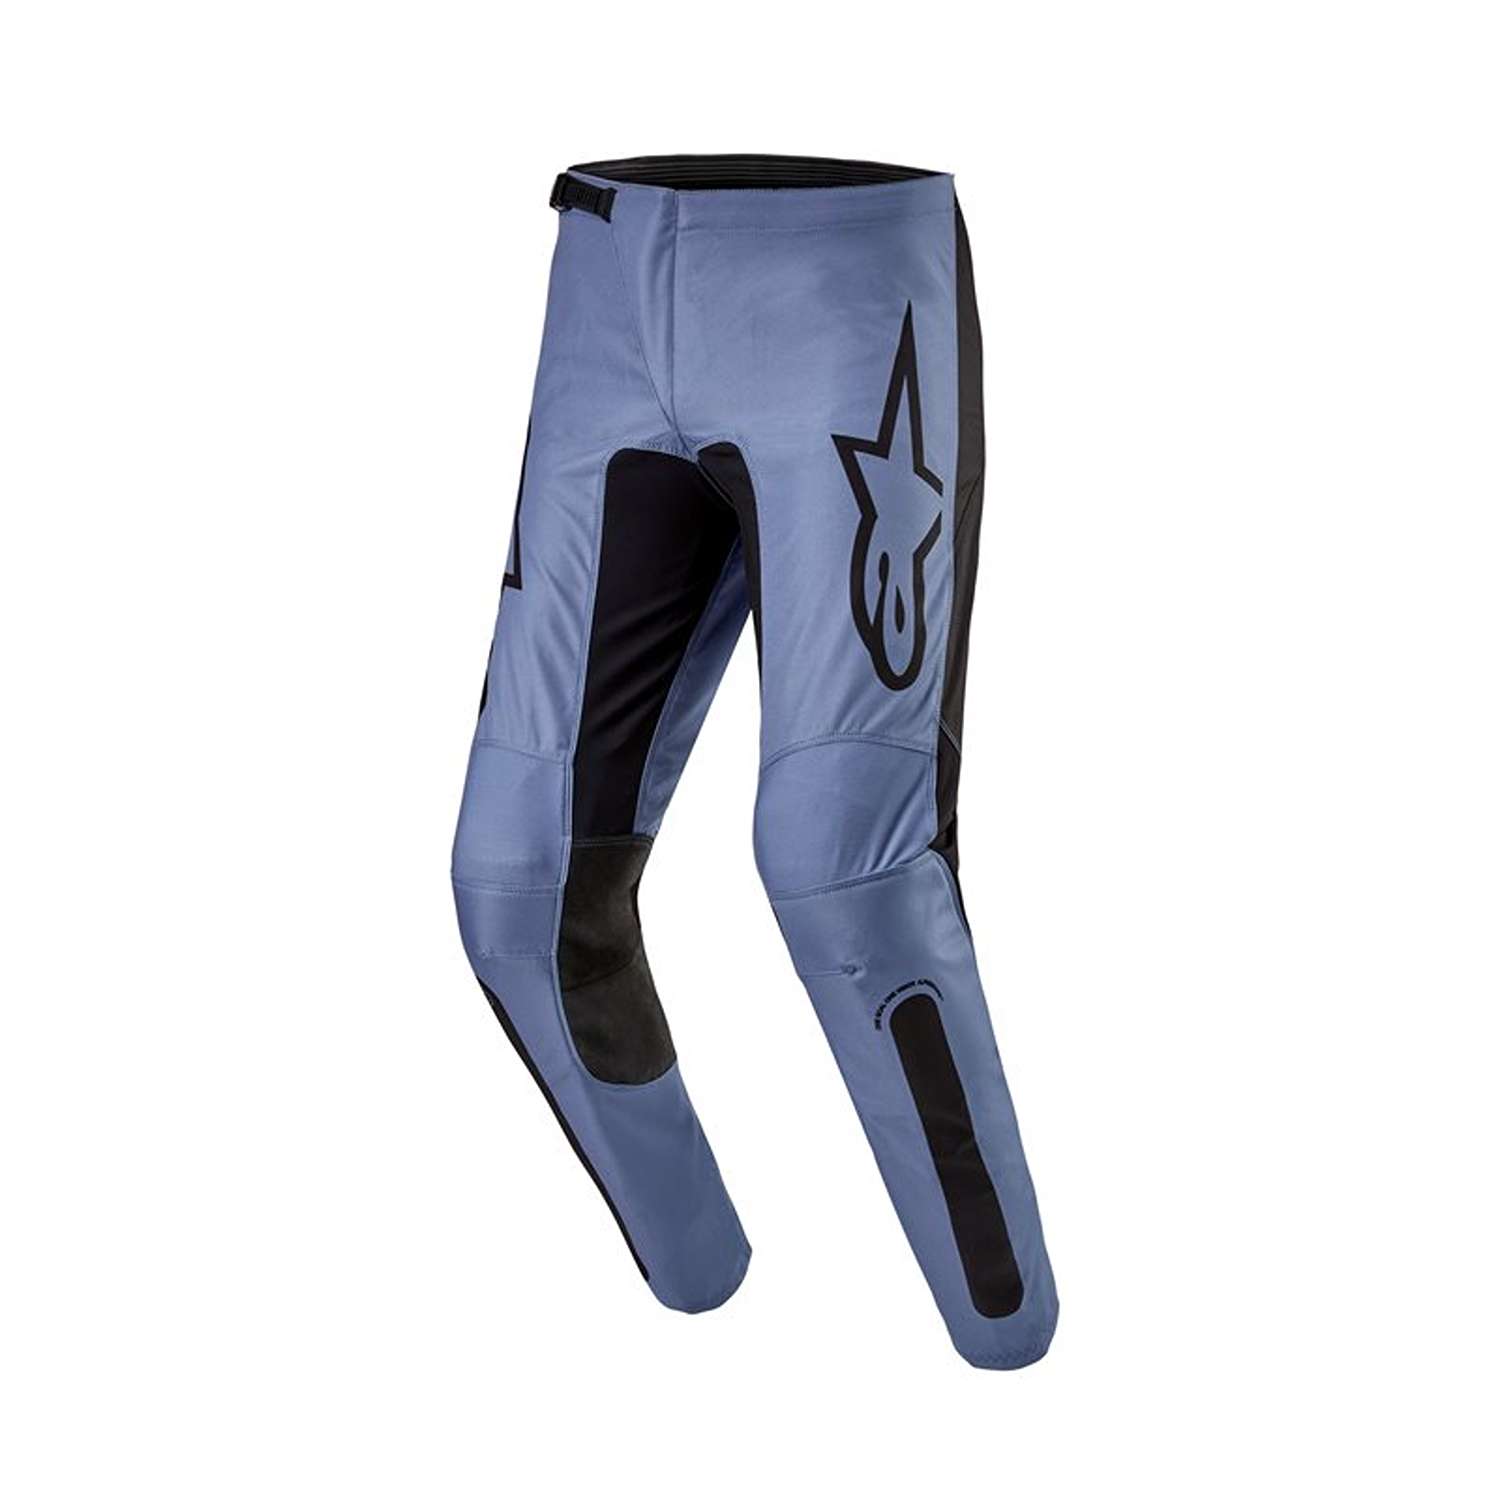 Image of Alpinestars Fluid Lurv Pants Light Blue Black Size 32 ID 8059347265223